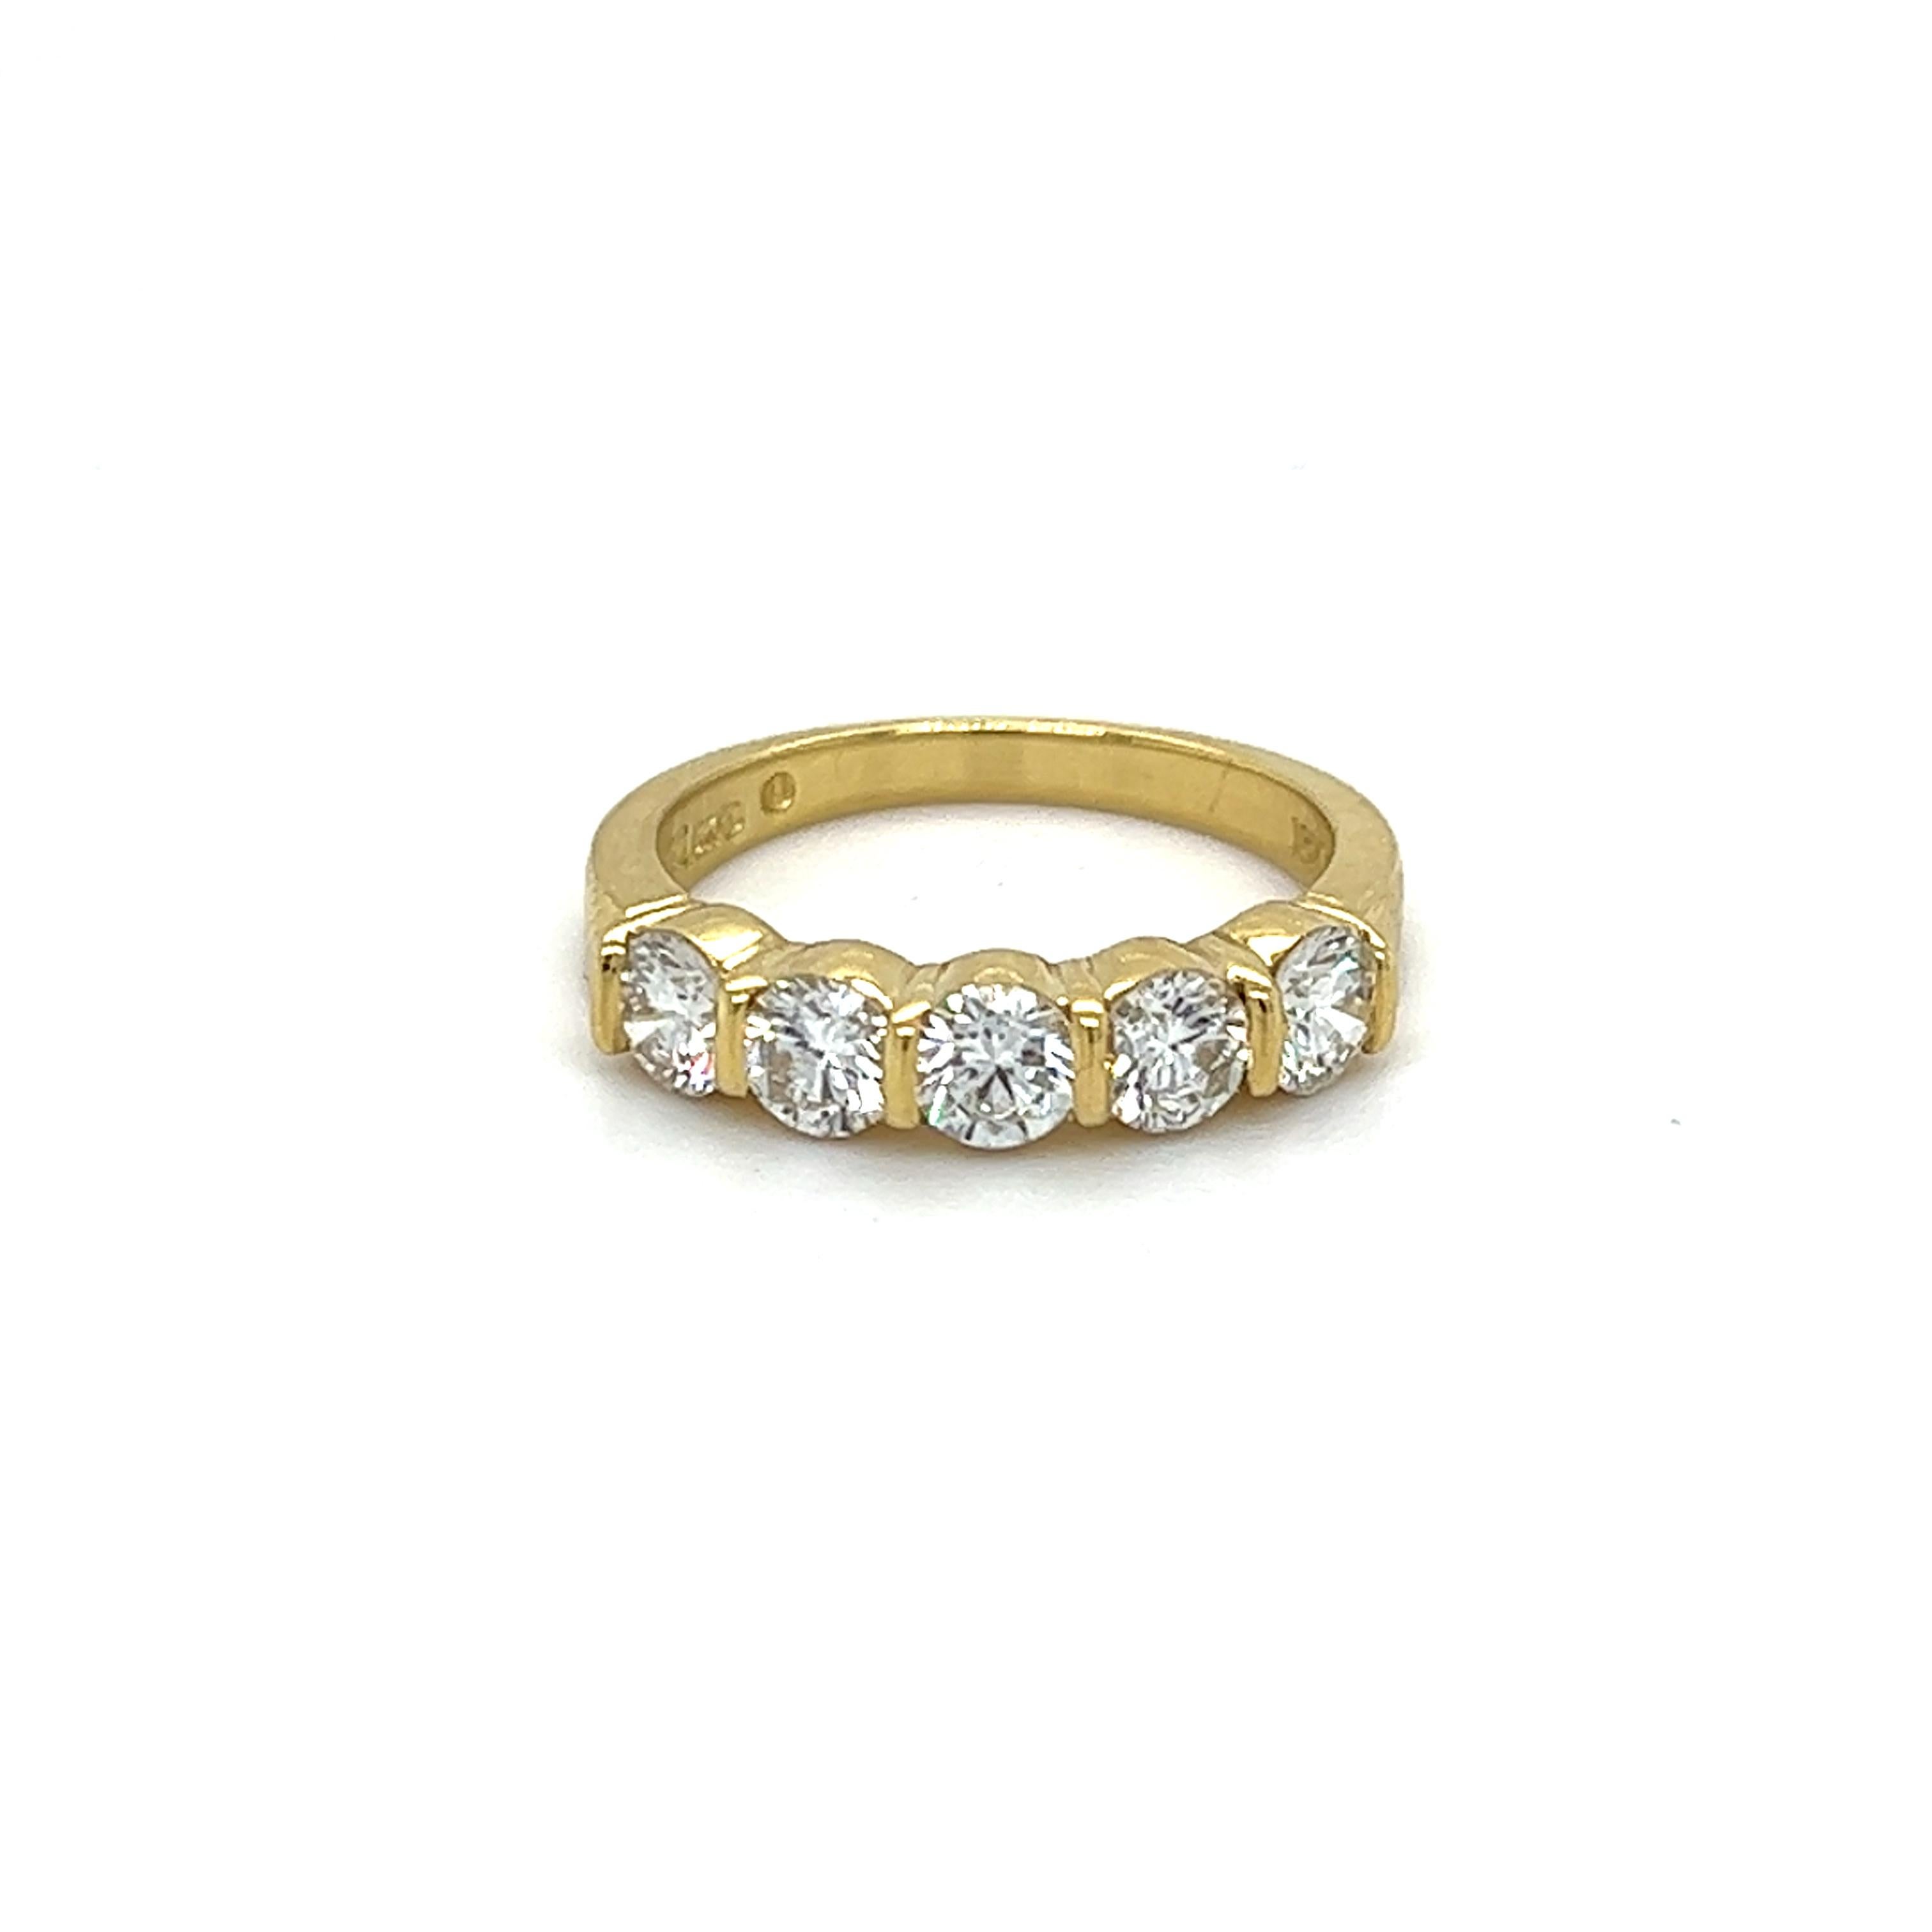 Ein Ring aus 18 Karat Gelbgold, besetzt mit fünf (5) runden Diamanten im Brillantschliff, ca. 1,00 Karat Gesamtgewicht, Farbe I/J und Reinheit VS. Der Ring ist mit 18K GEMLOK gestempelt und wiegt insgesamt 3,8 Gramm.  Der Ring hat die Fingergröße 5